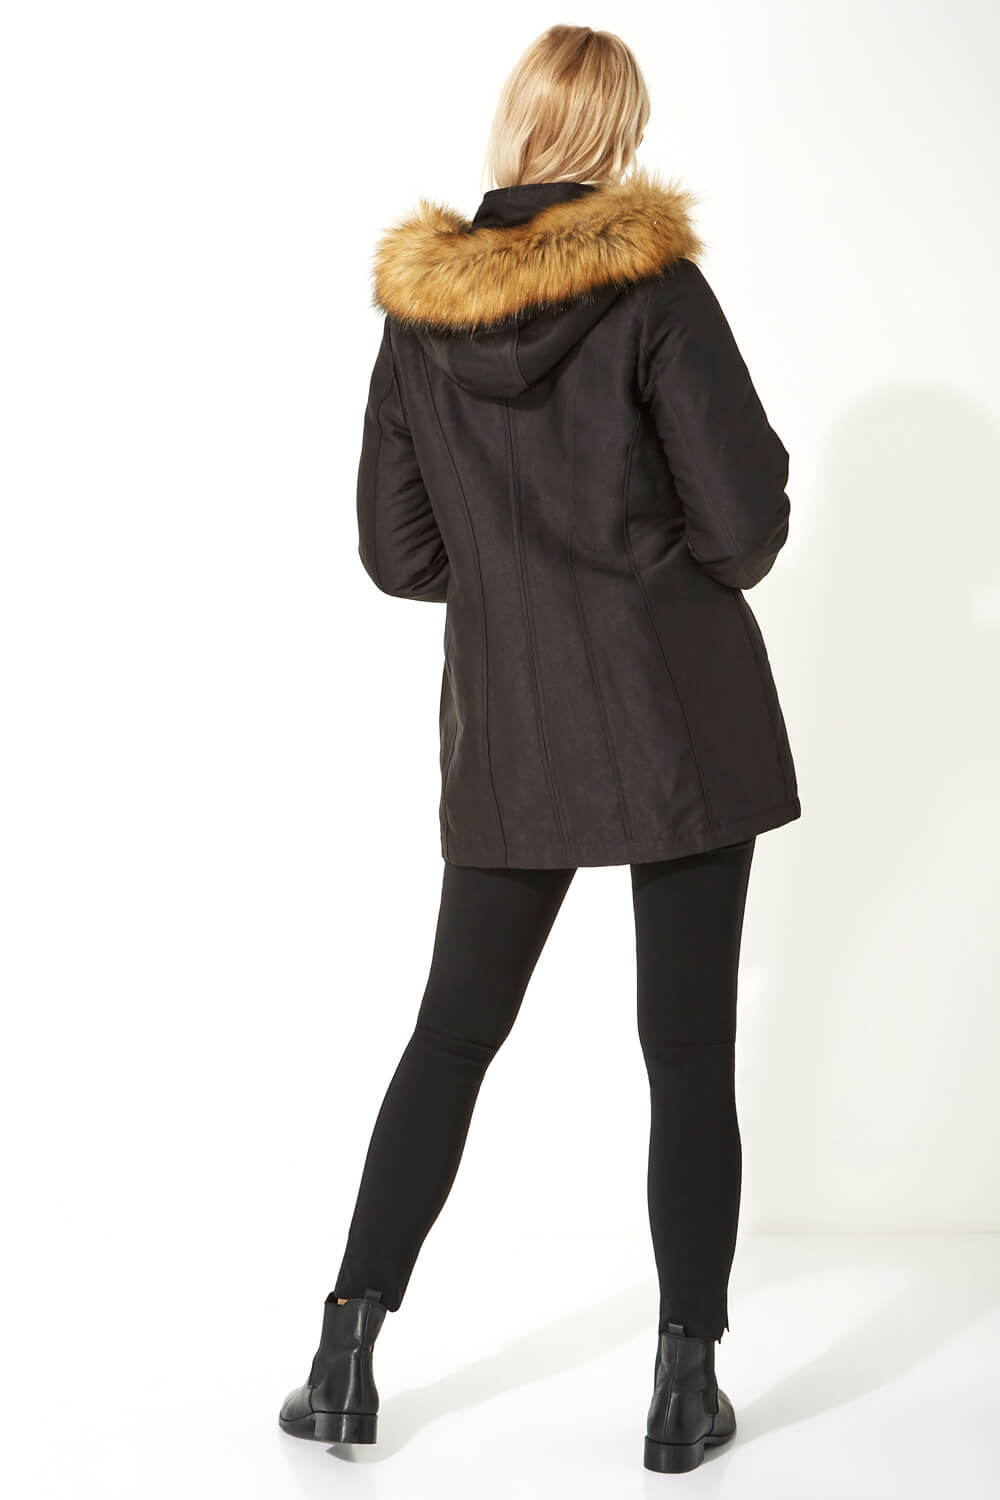 Black Luxury Faux Fur Trim Parka Coat, Image 3 of 5